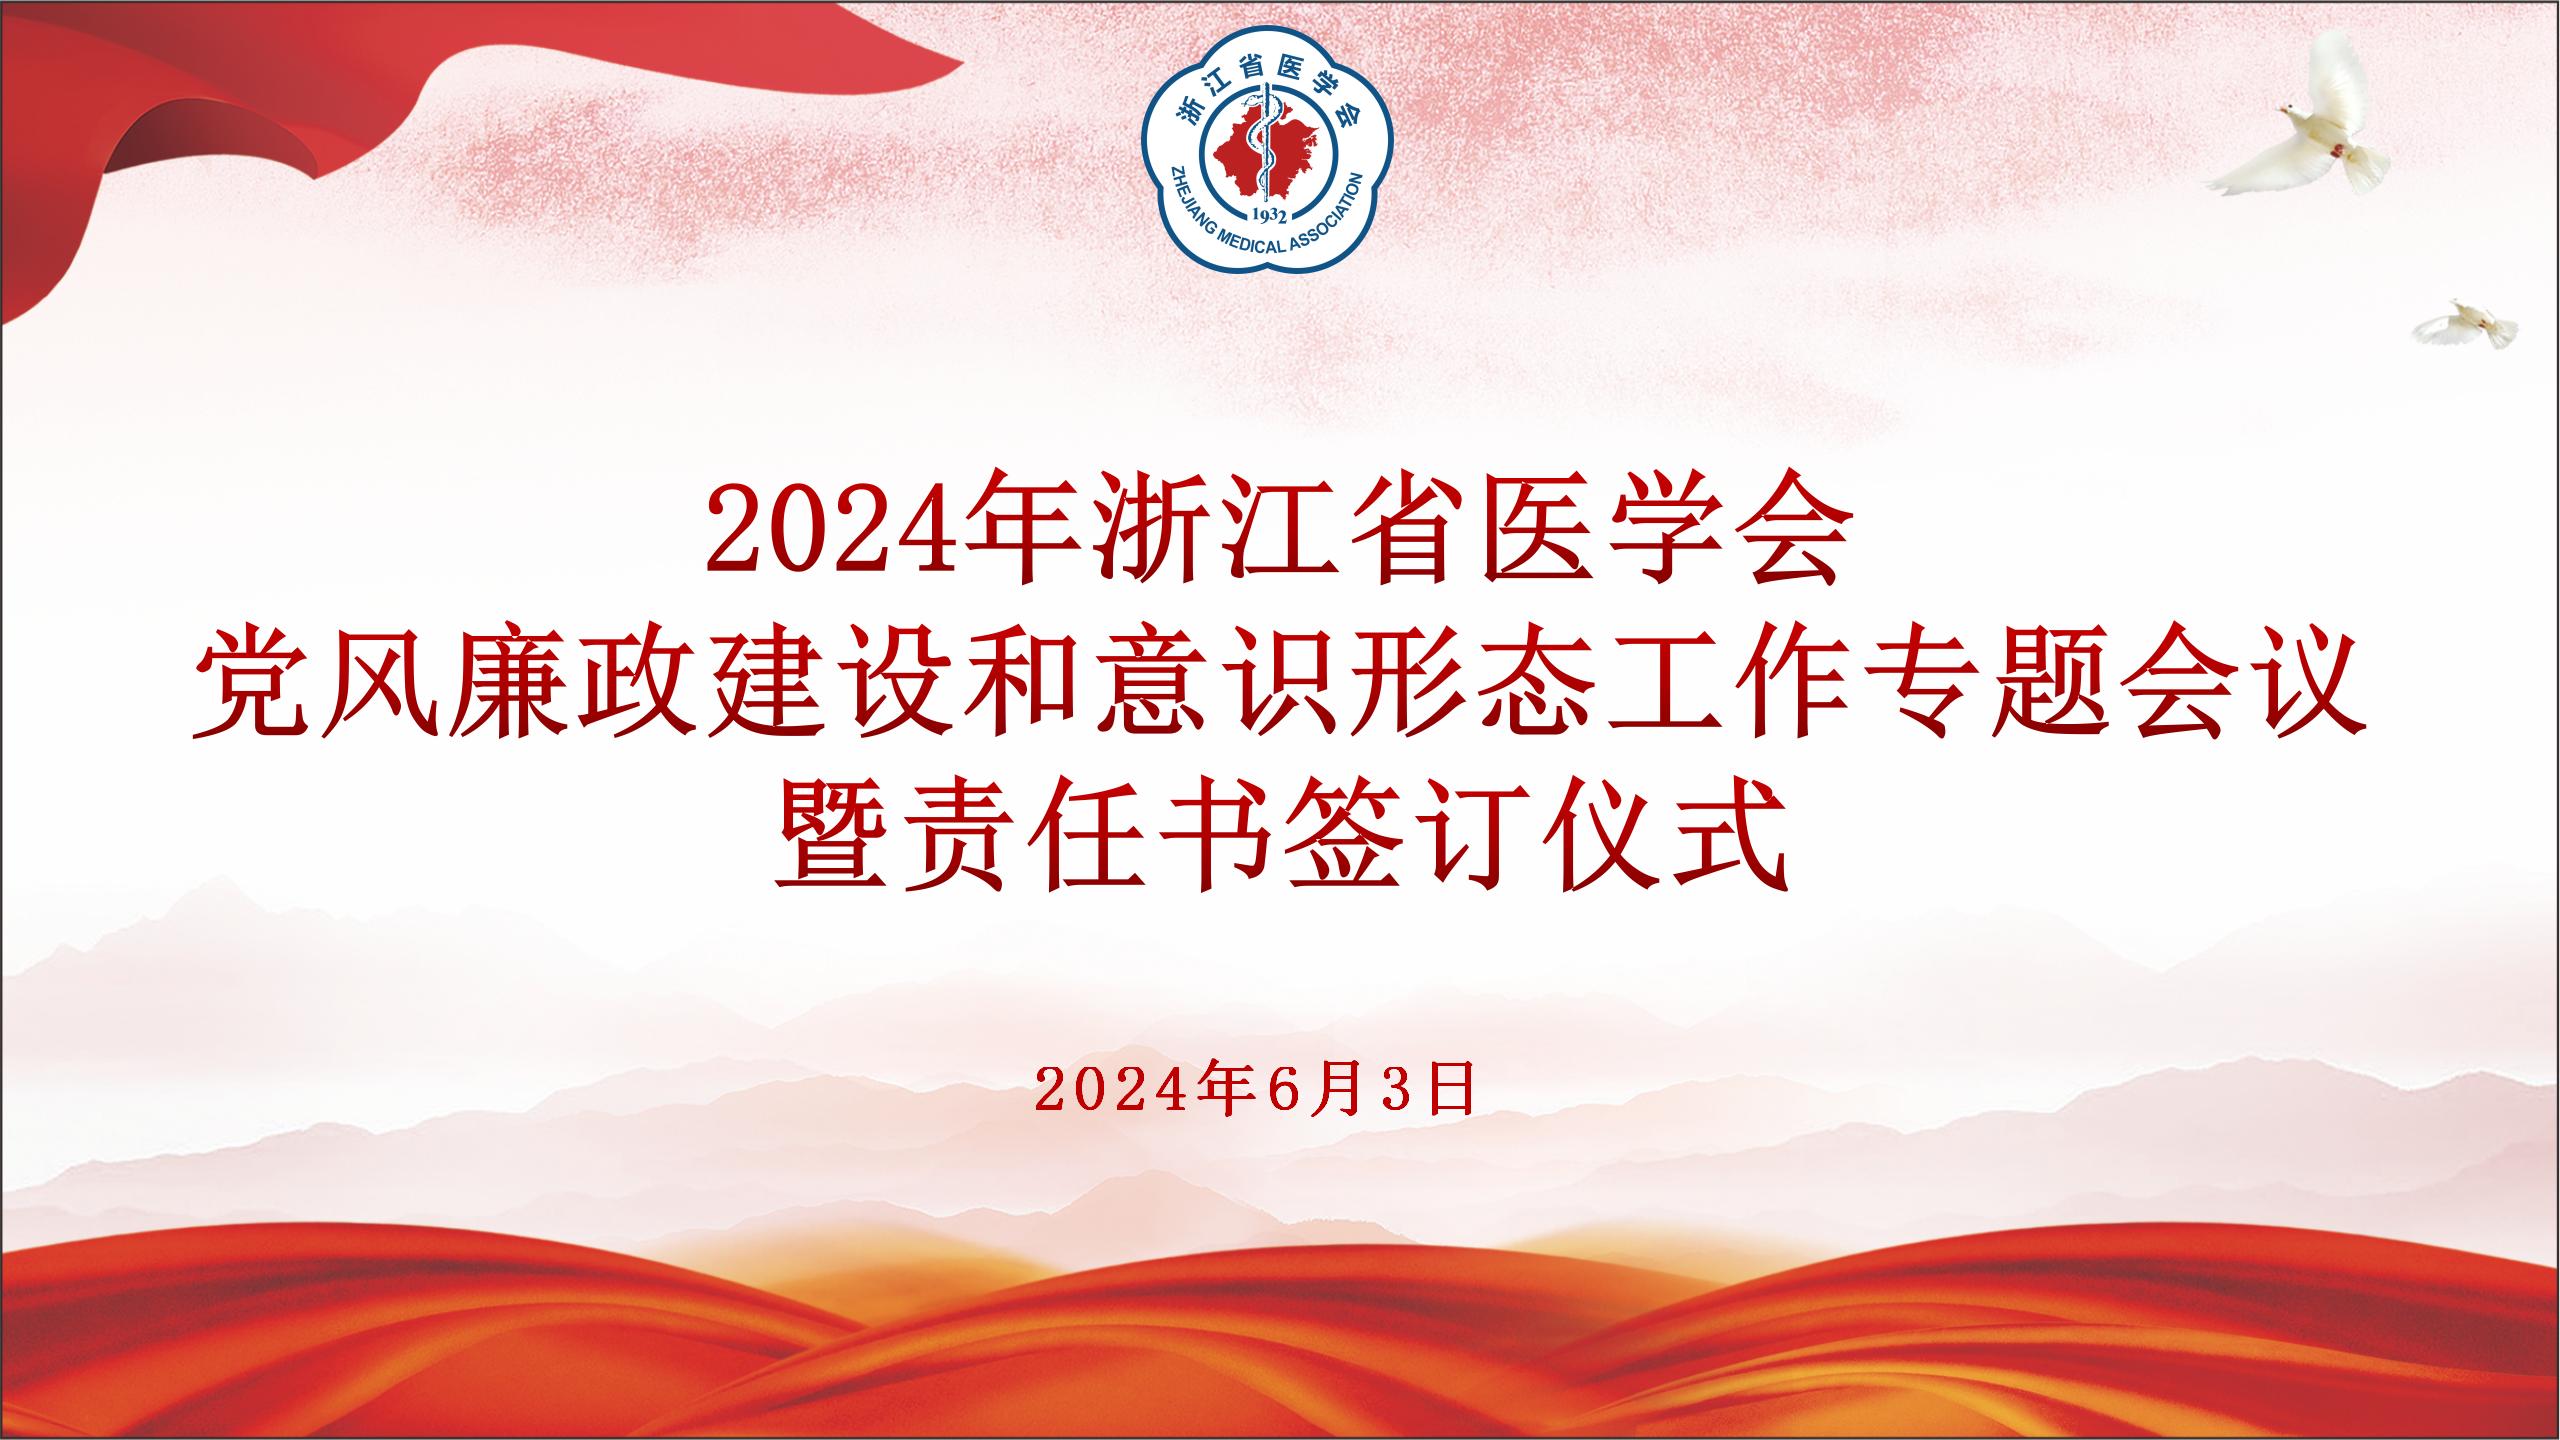 浙江省医学会召开2024年党风廉政建设和意识形态工作专题学习会议